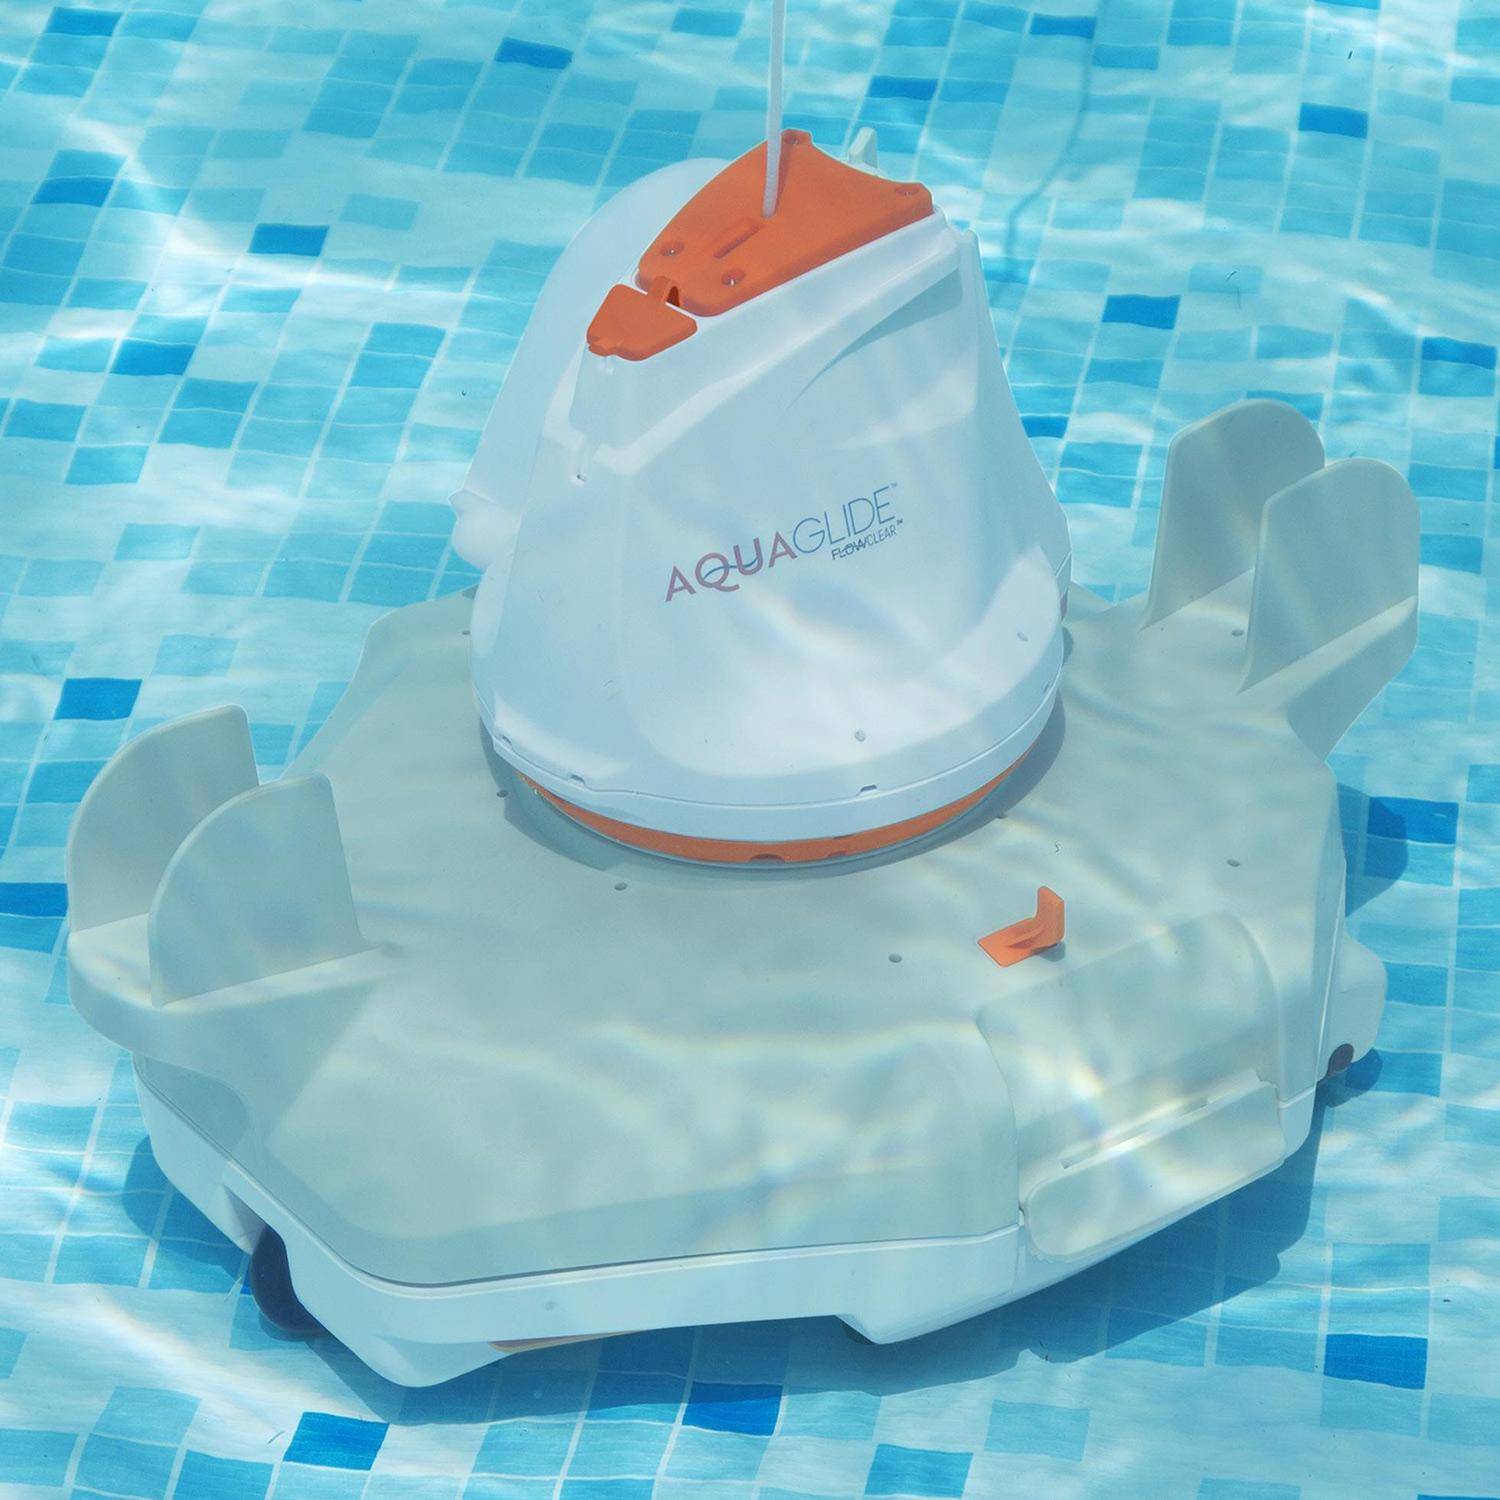 Robot aspirador Flowclear aquaglide para piscinas de fondo plano de hasta 20m².,sweeek,Photo3